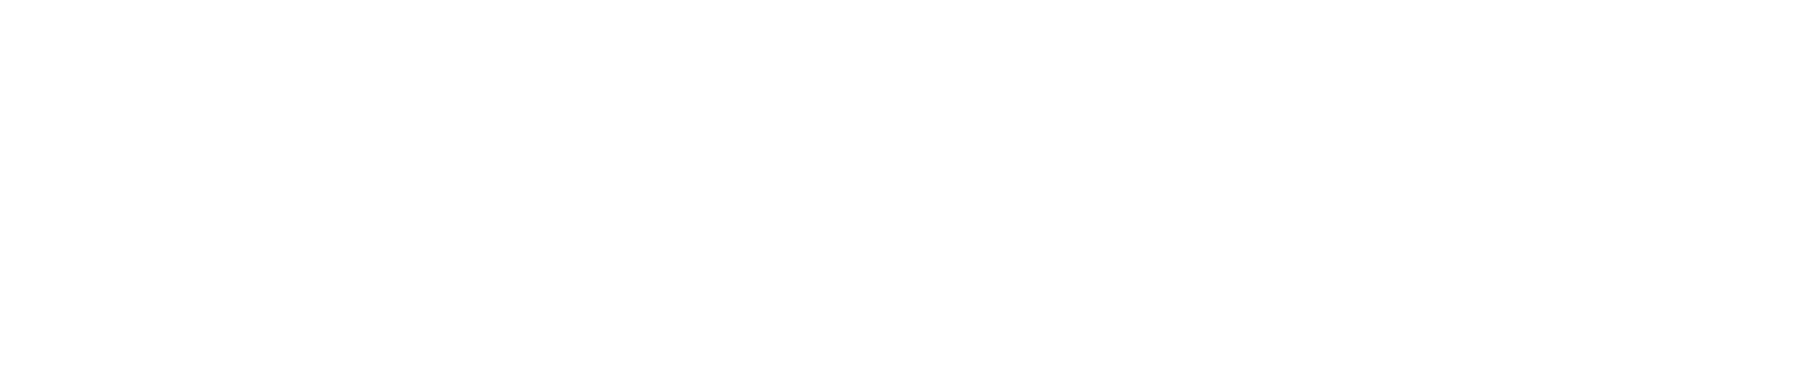 CUDS - CONGRESO UNIVERSIDAD Y DESARROLLO SOSTENIBLE - UNIVERSIDAD SAN GREGORIO DE PORTOVIEJO - USGP